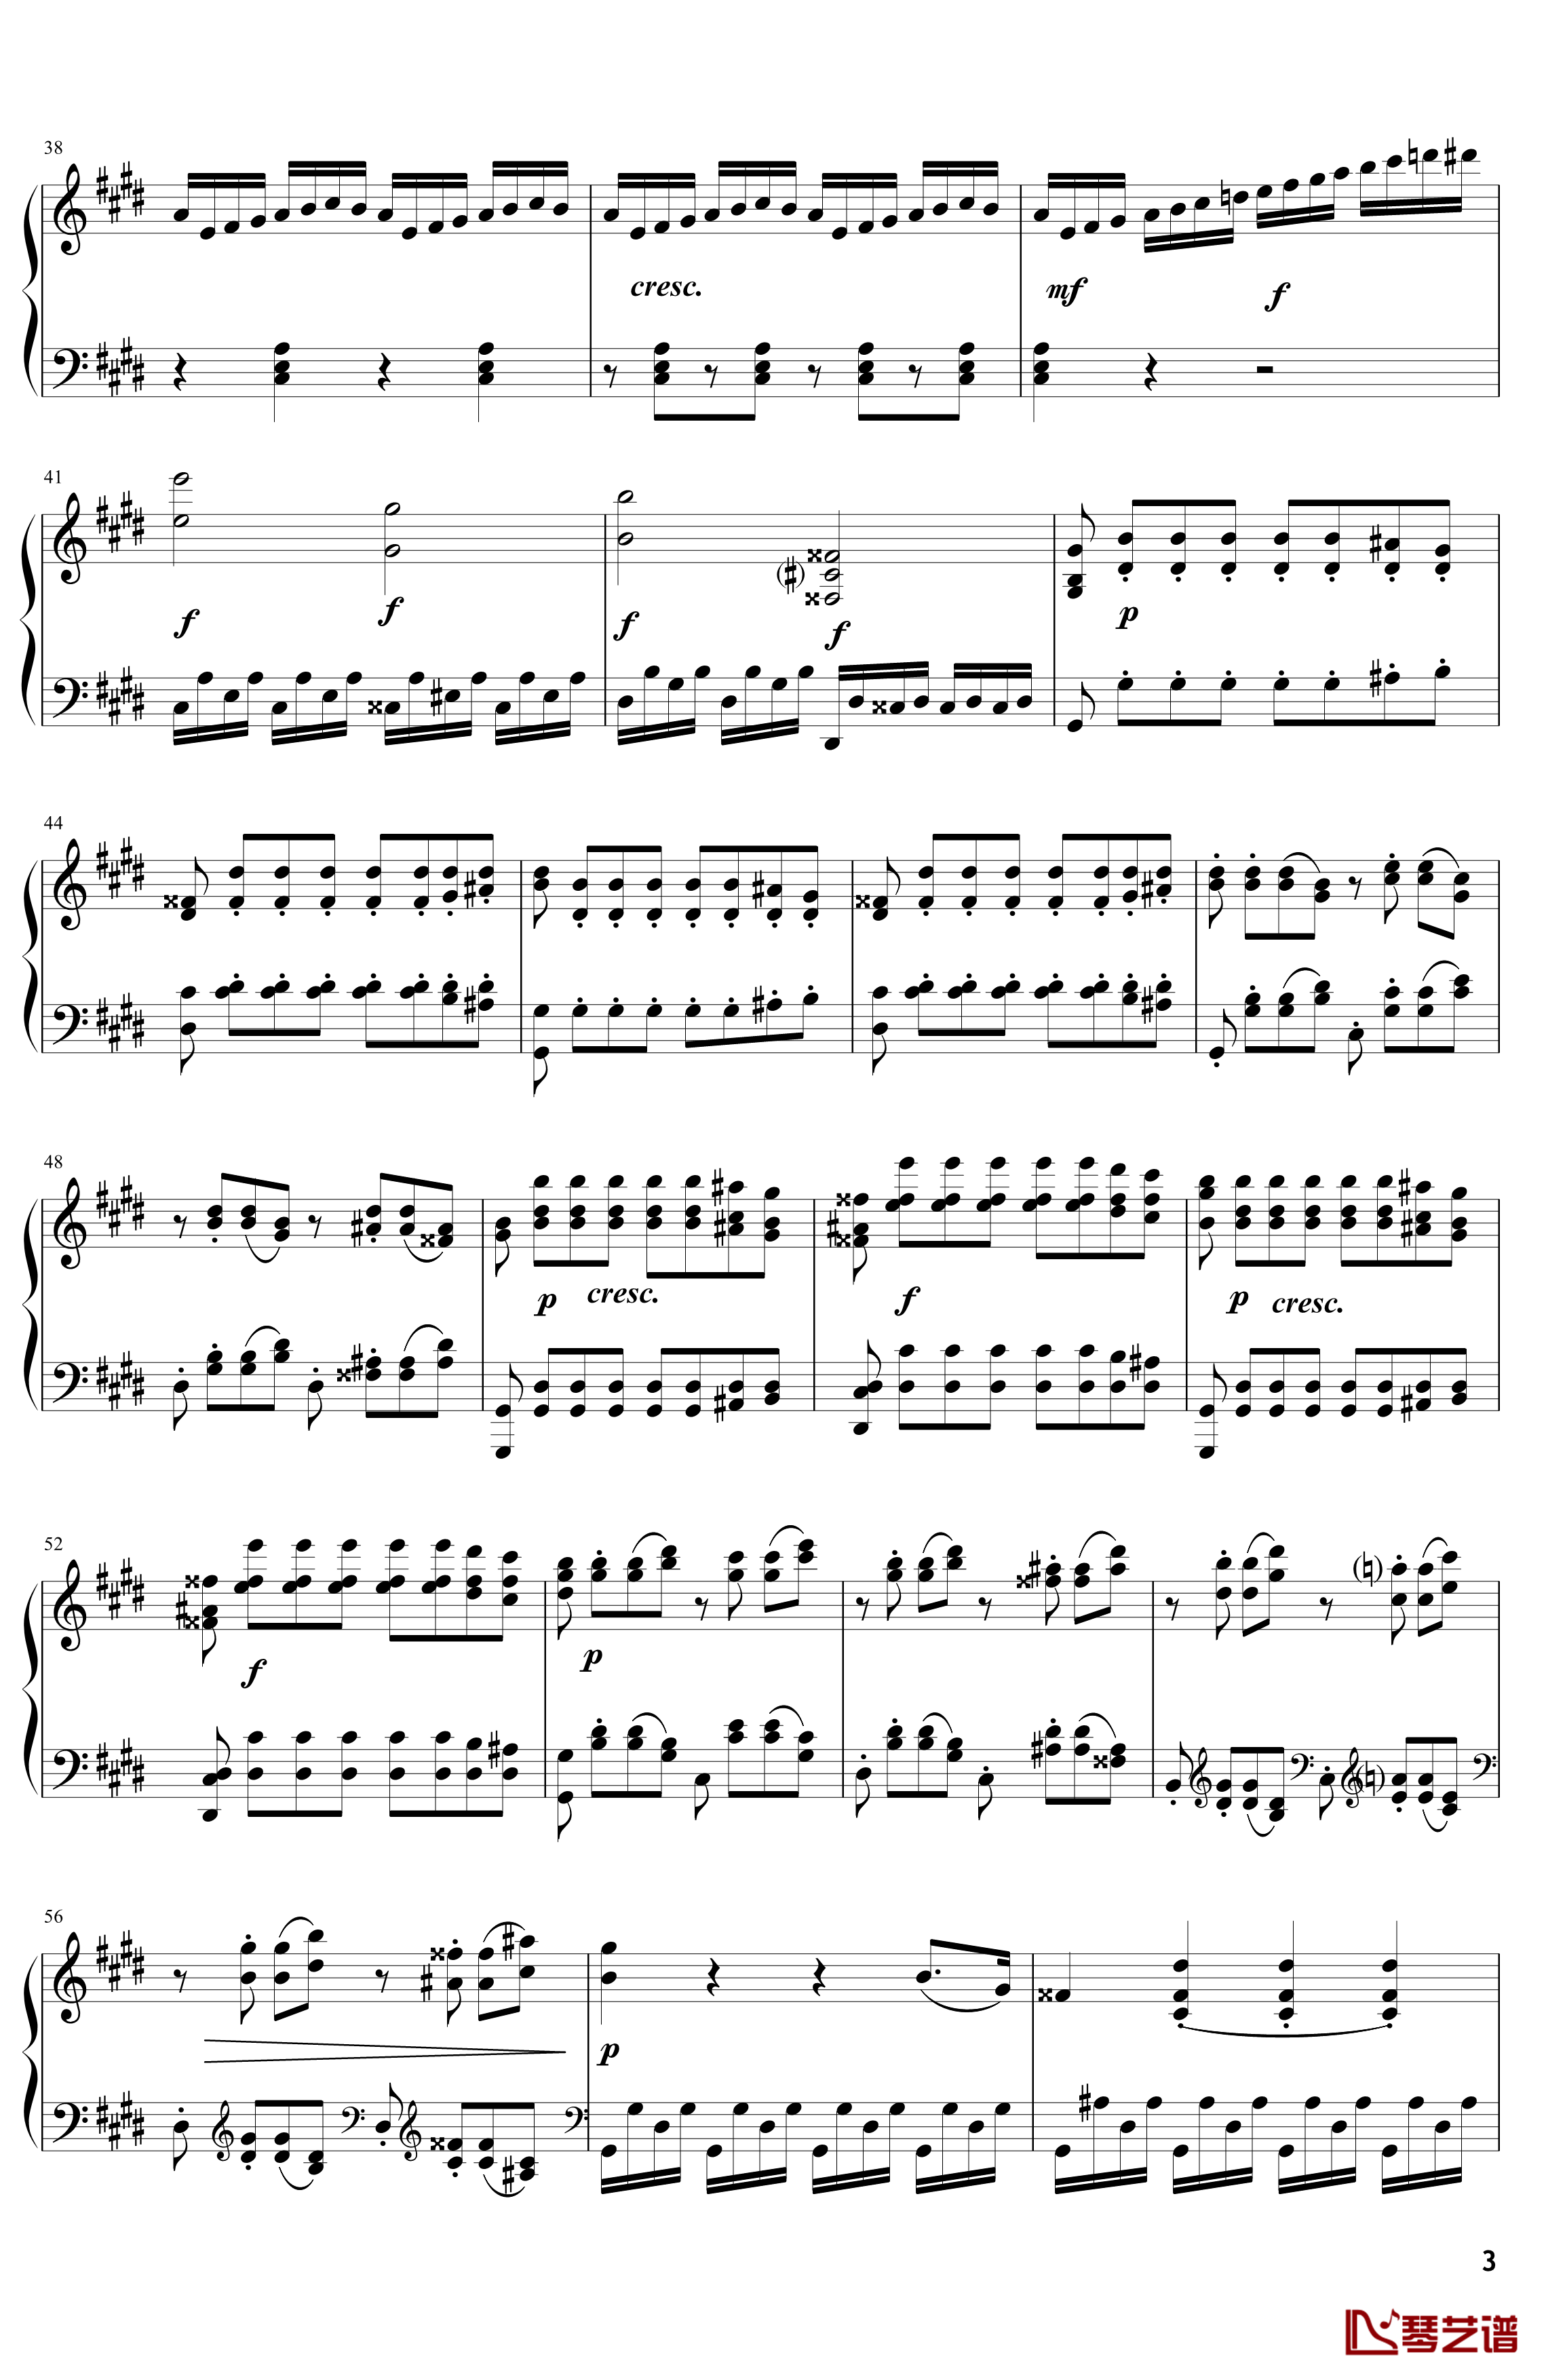 月光钢琴谱-奏鸣曲-贝多芬-beethoven3